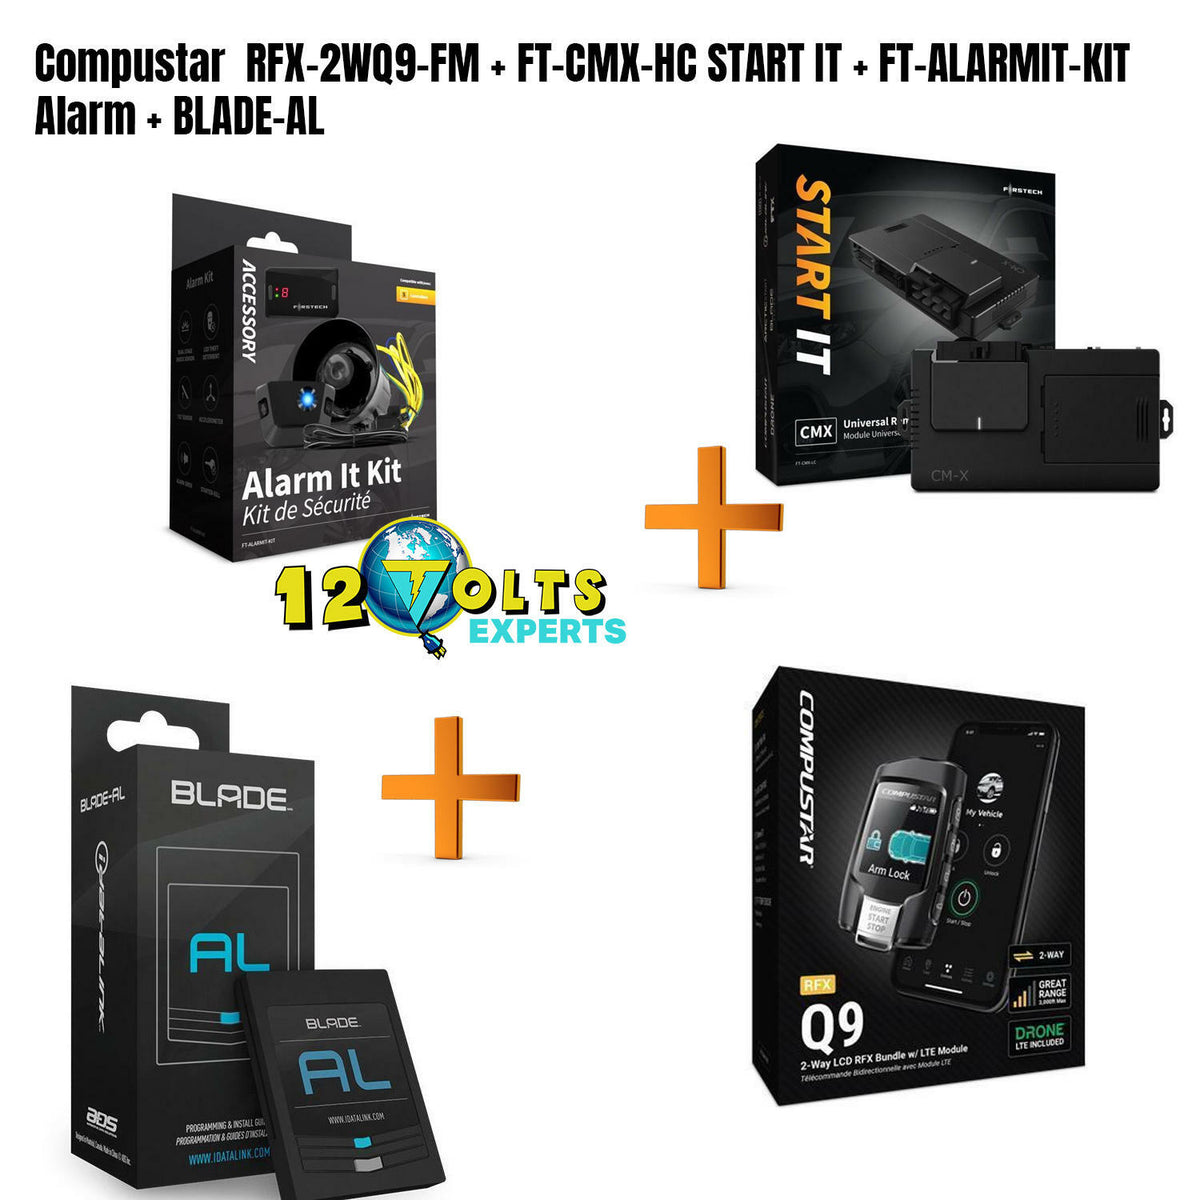 Compustar  RFX-2WQ9-FM  + FT-CMX-HC START IT + FT-ALARMIT-KIT Alarm + Blade-AL